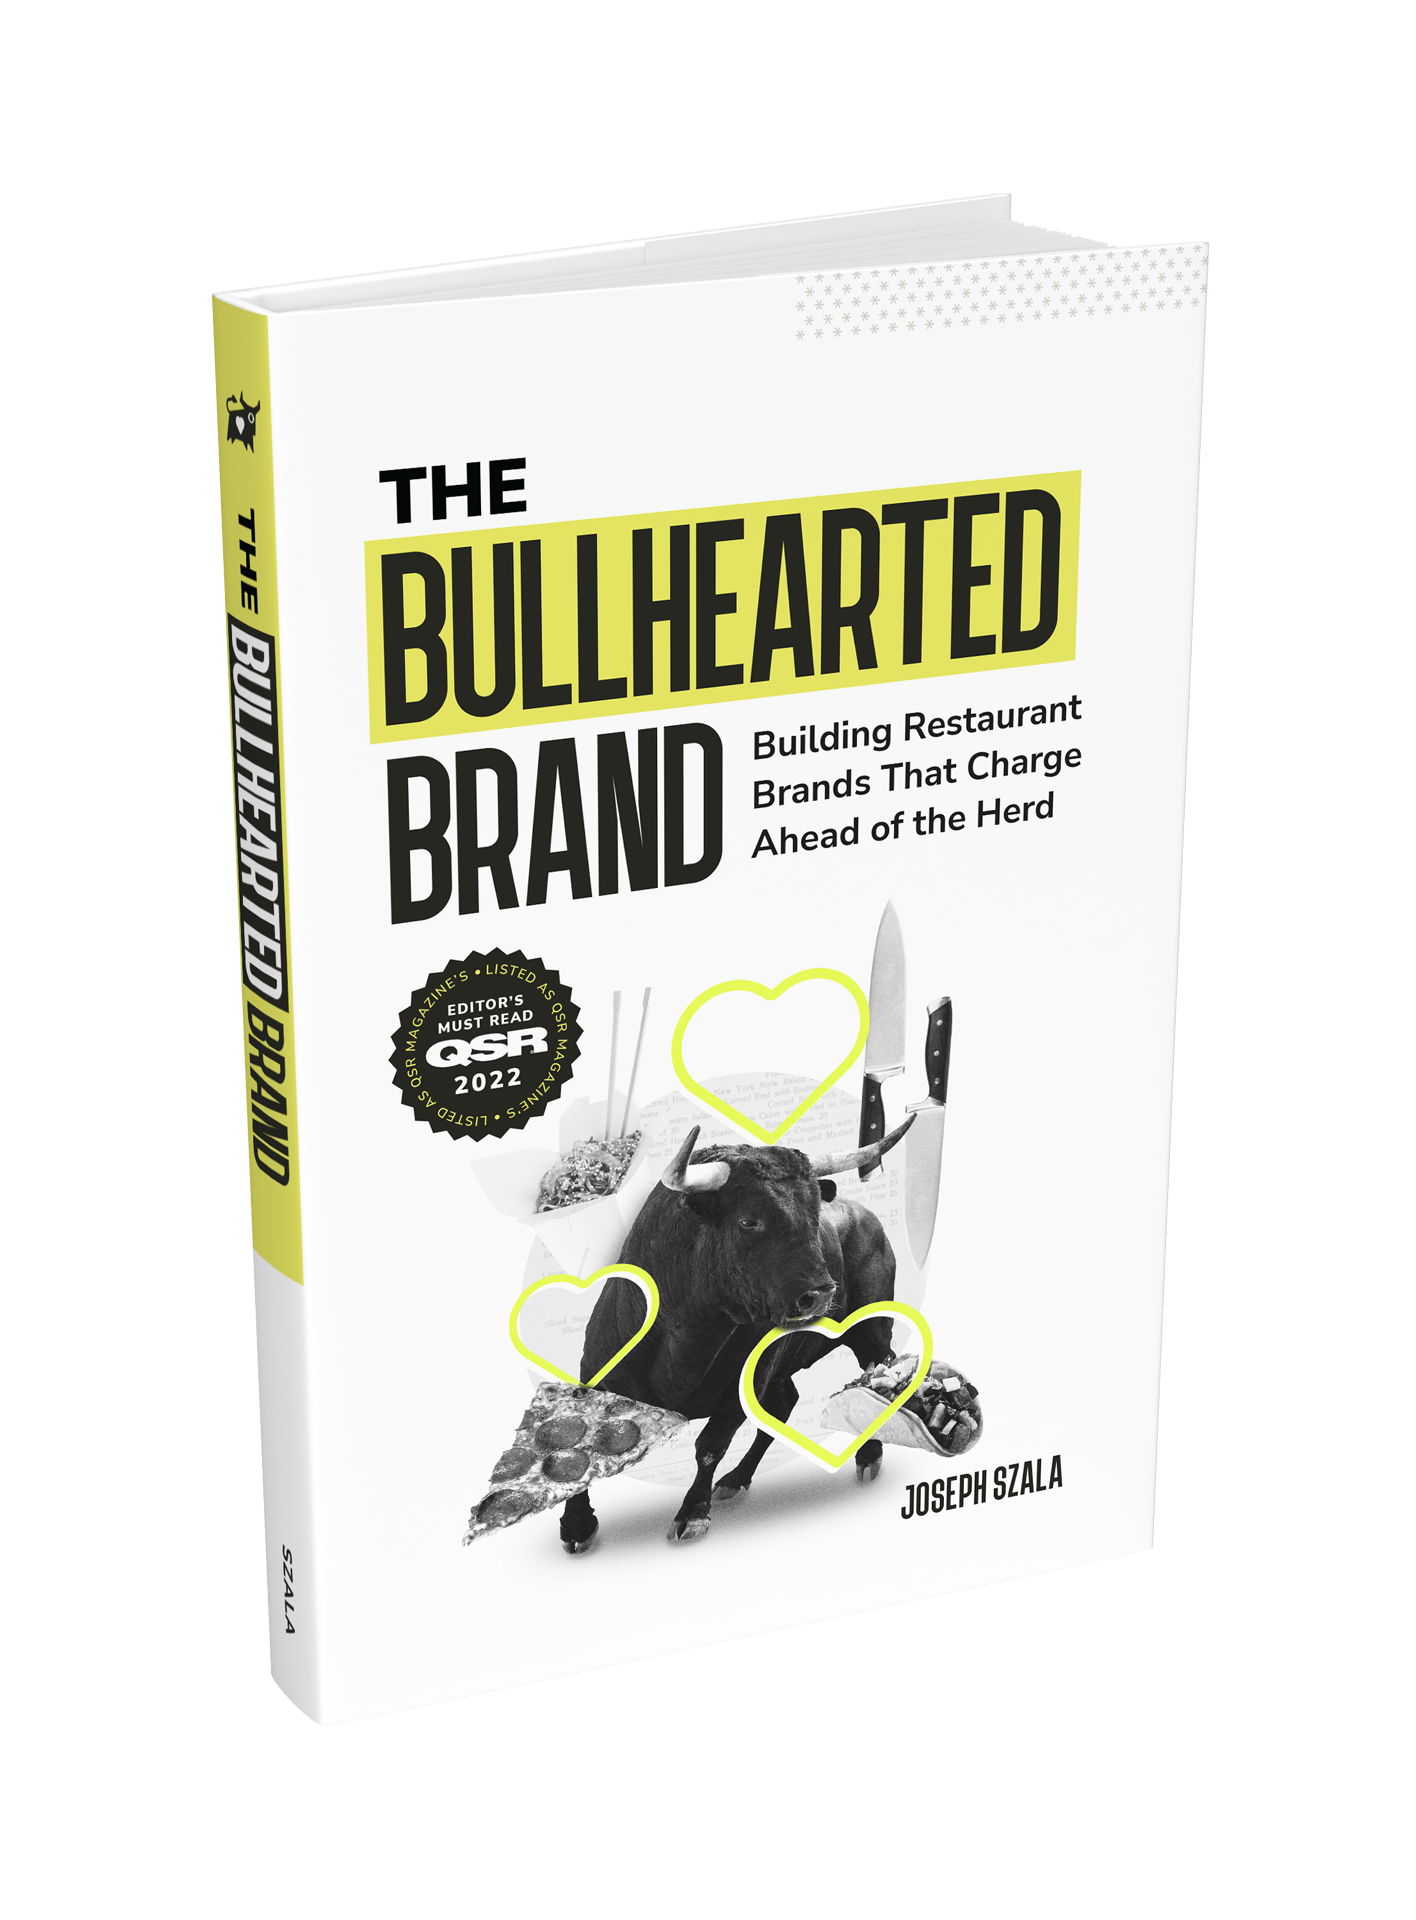 The Bullhearted Brand restaurant branding book cover